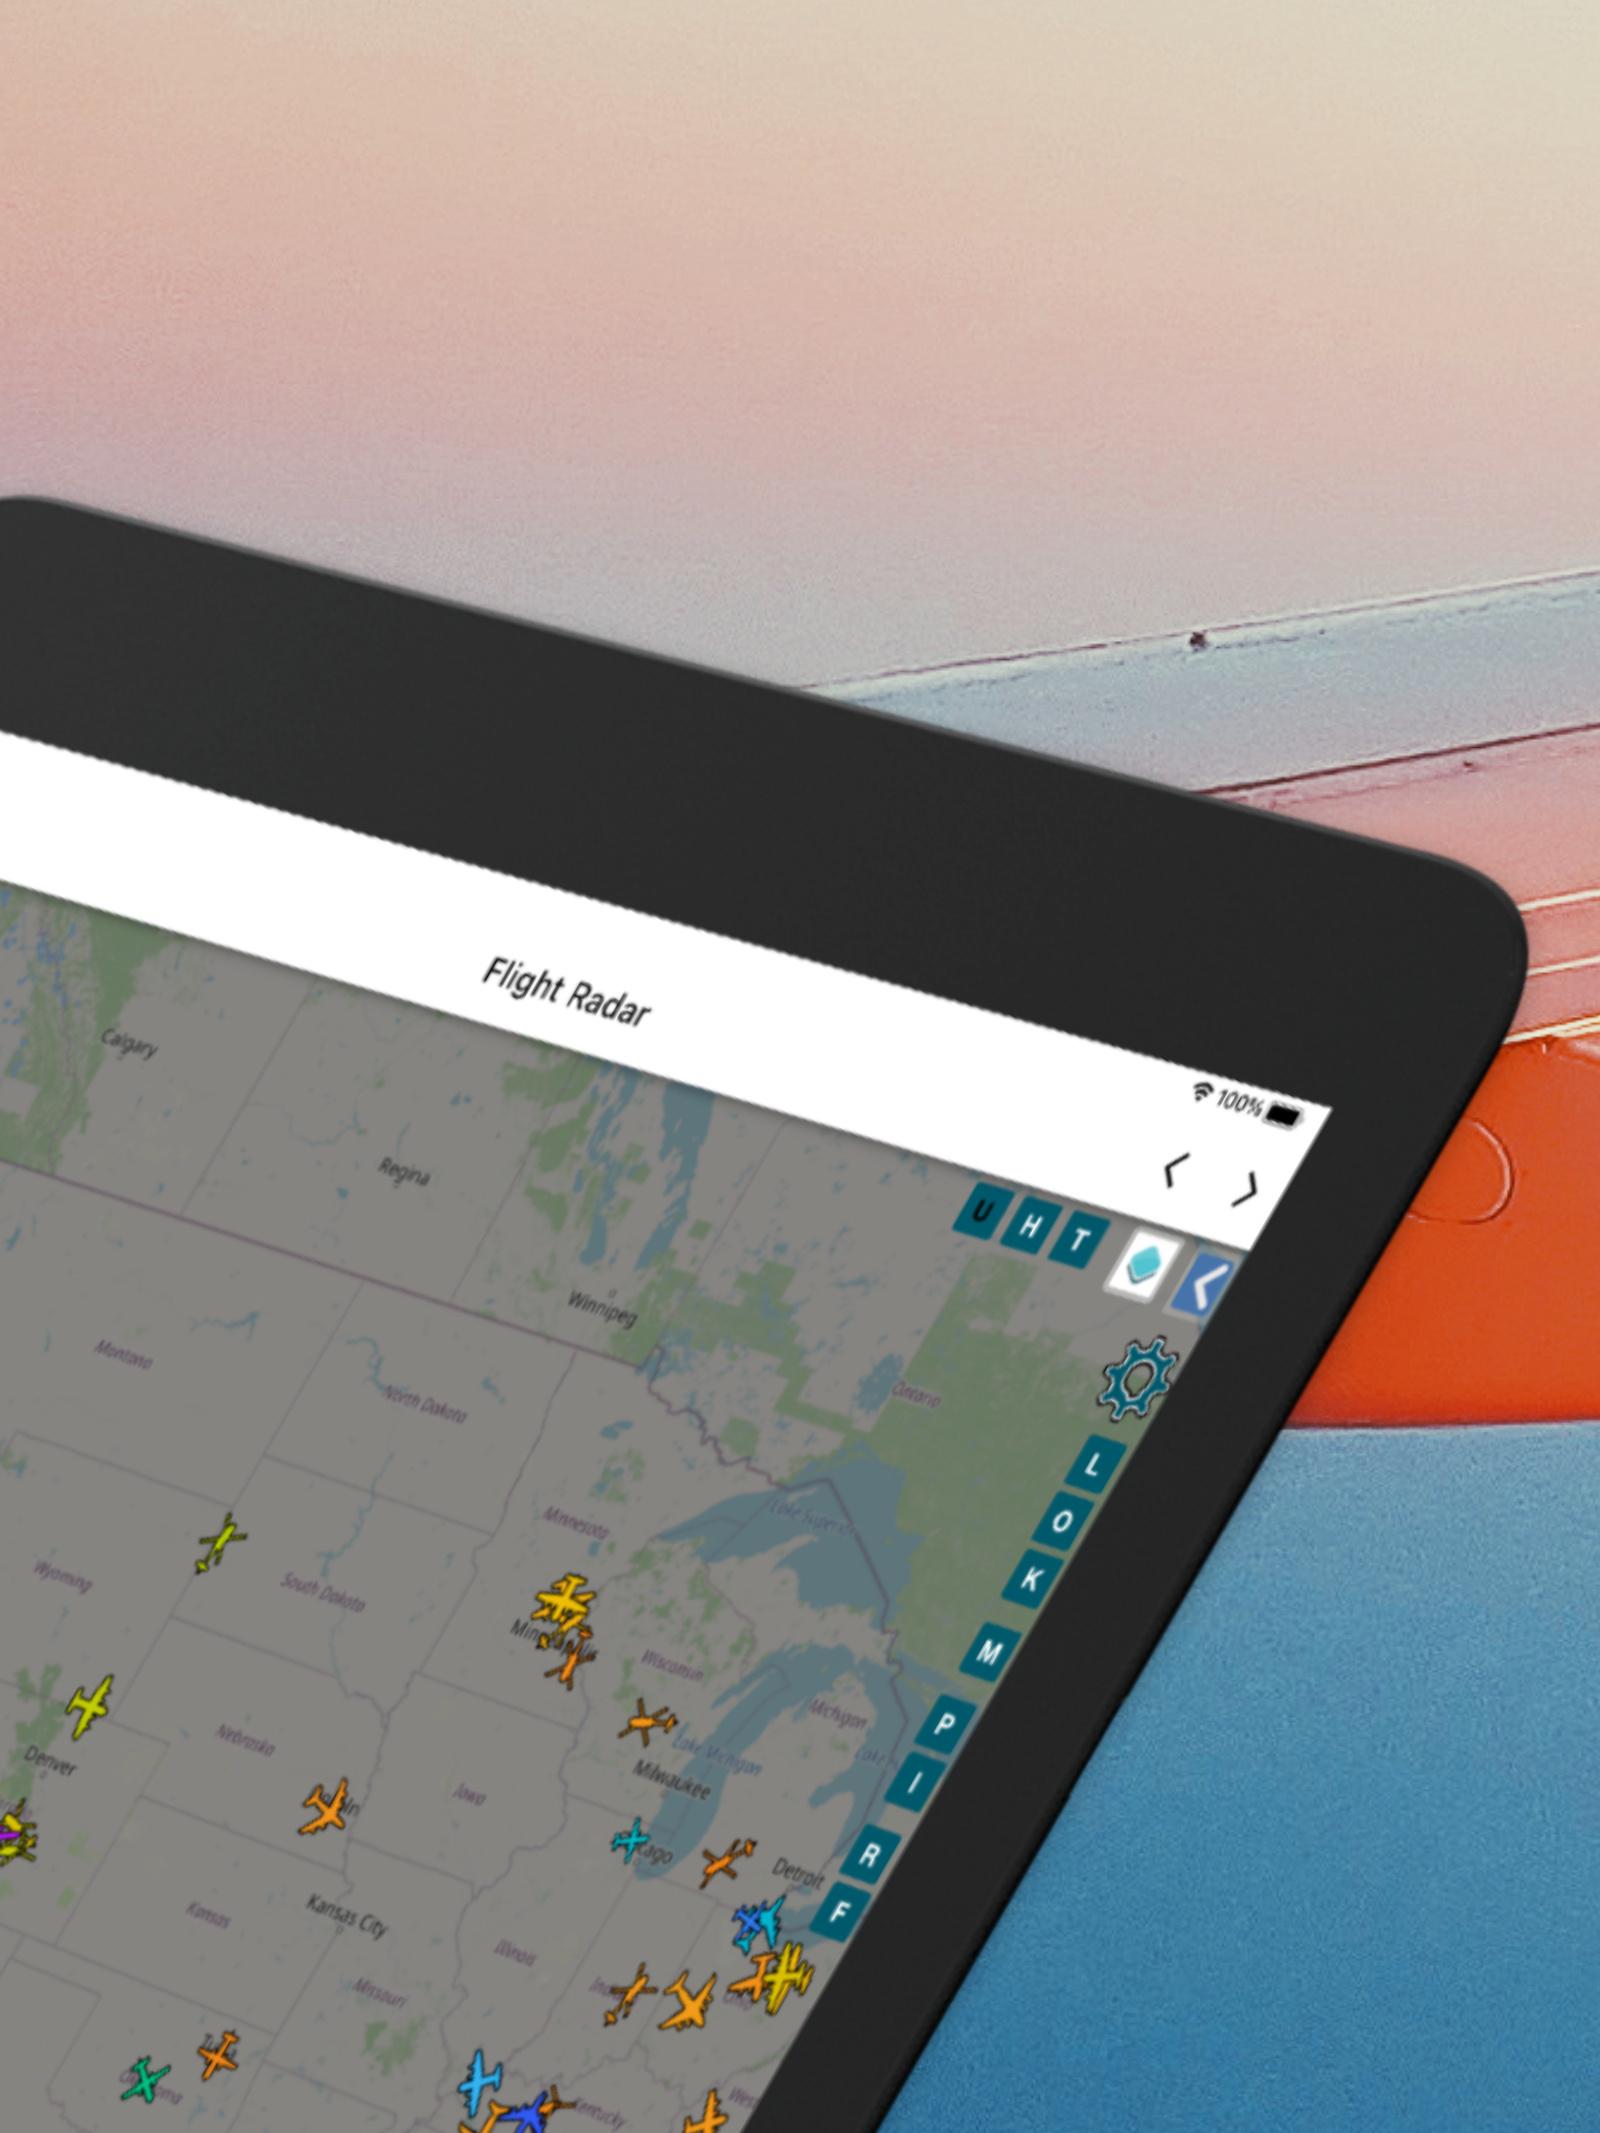 Flight Tracker — Flight Radarapp截图